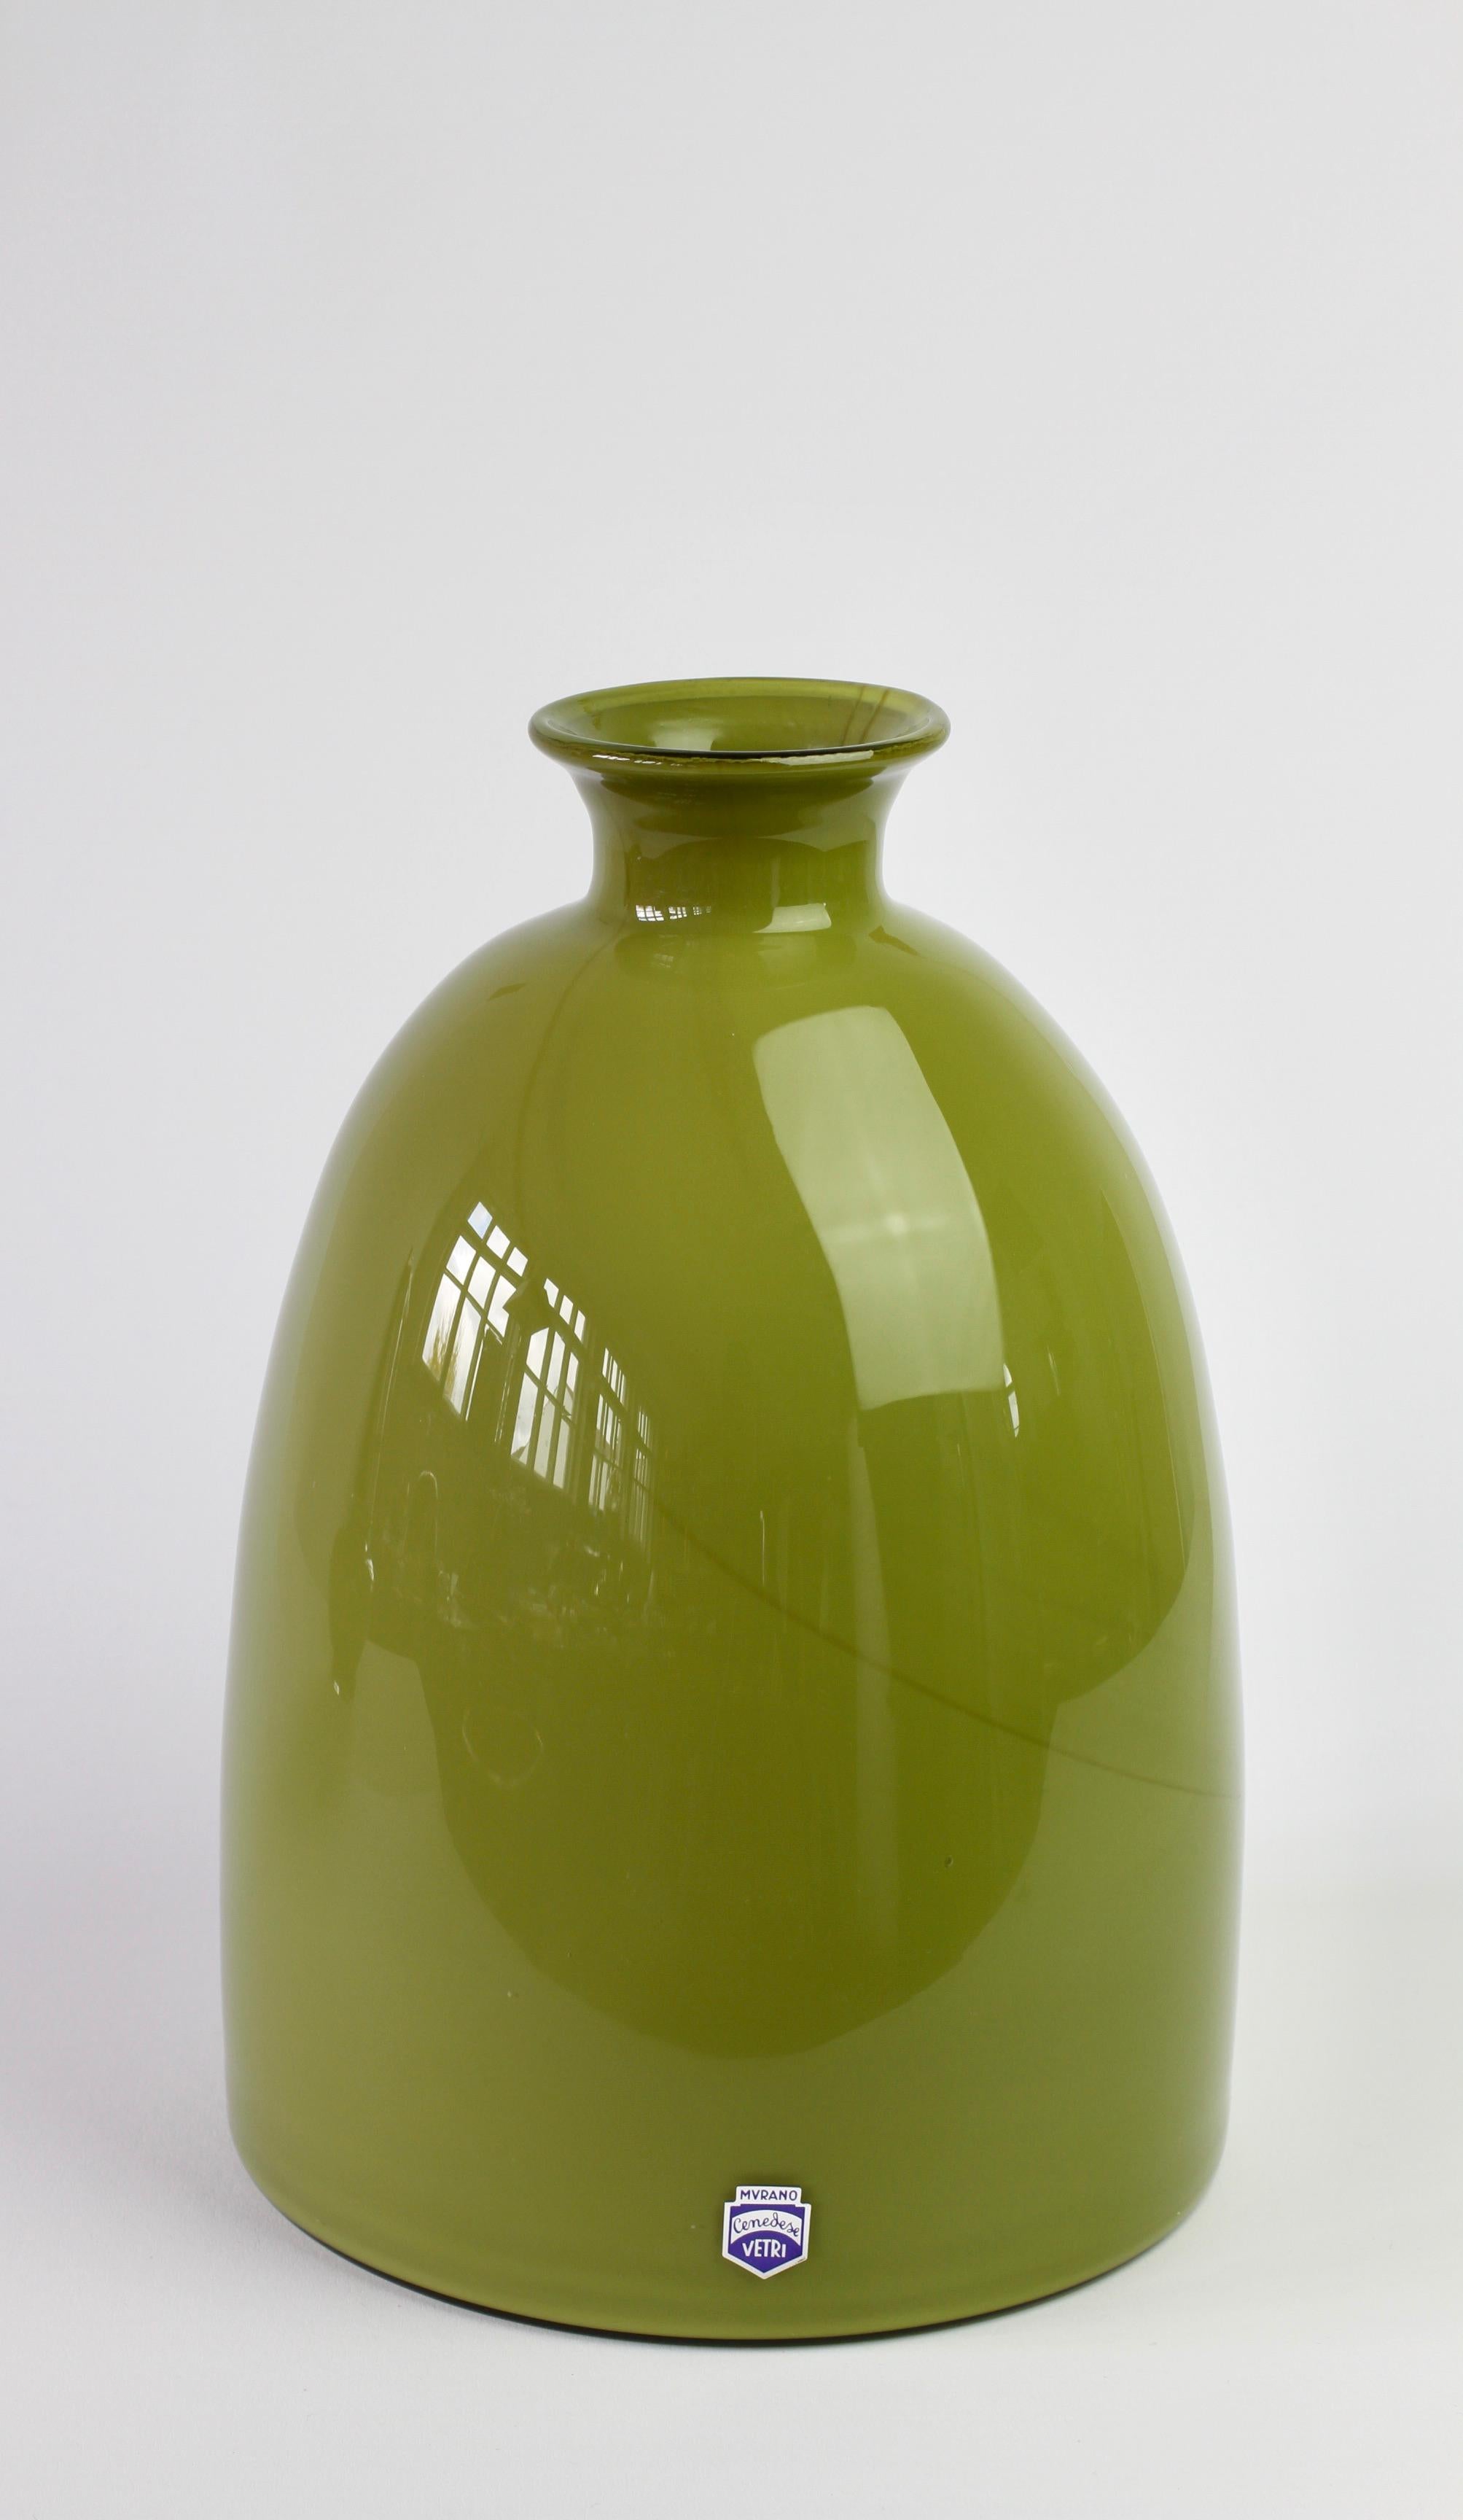 Apfel- oder moosgrüne Cenedese Vase oder Gefäß aus italienischem Muranoglas aus der Mitte des Jahrhunderts, hergestellt in Italien, ca. 1970-1990. Besonders auffallend ist die Form, die die Eigenschaften von handgedrehter Keramik mit dem